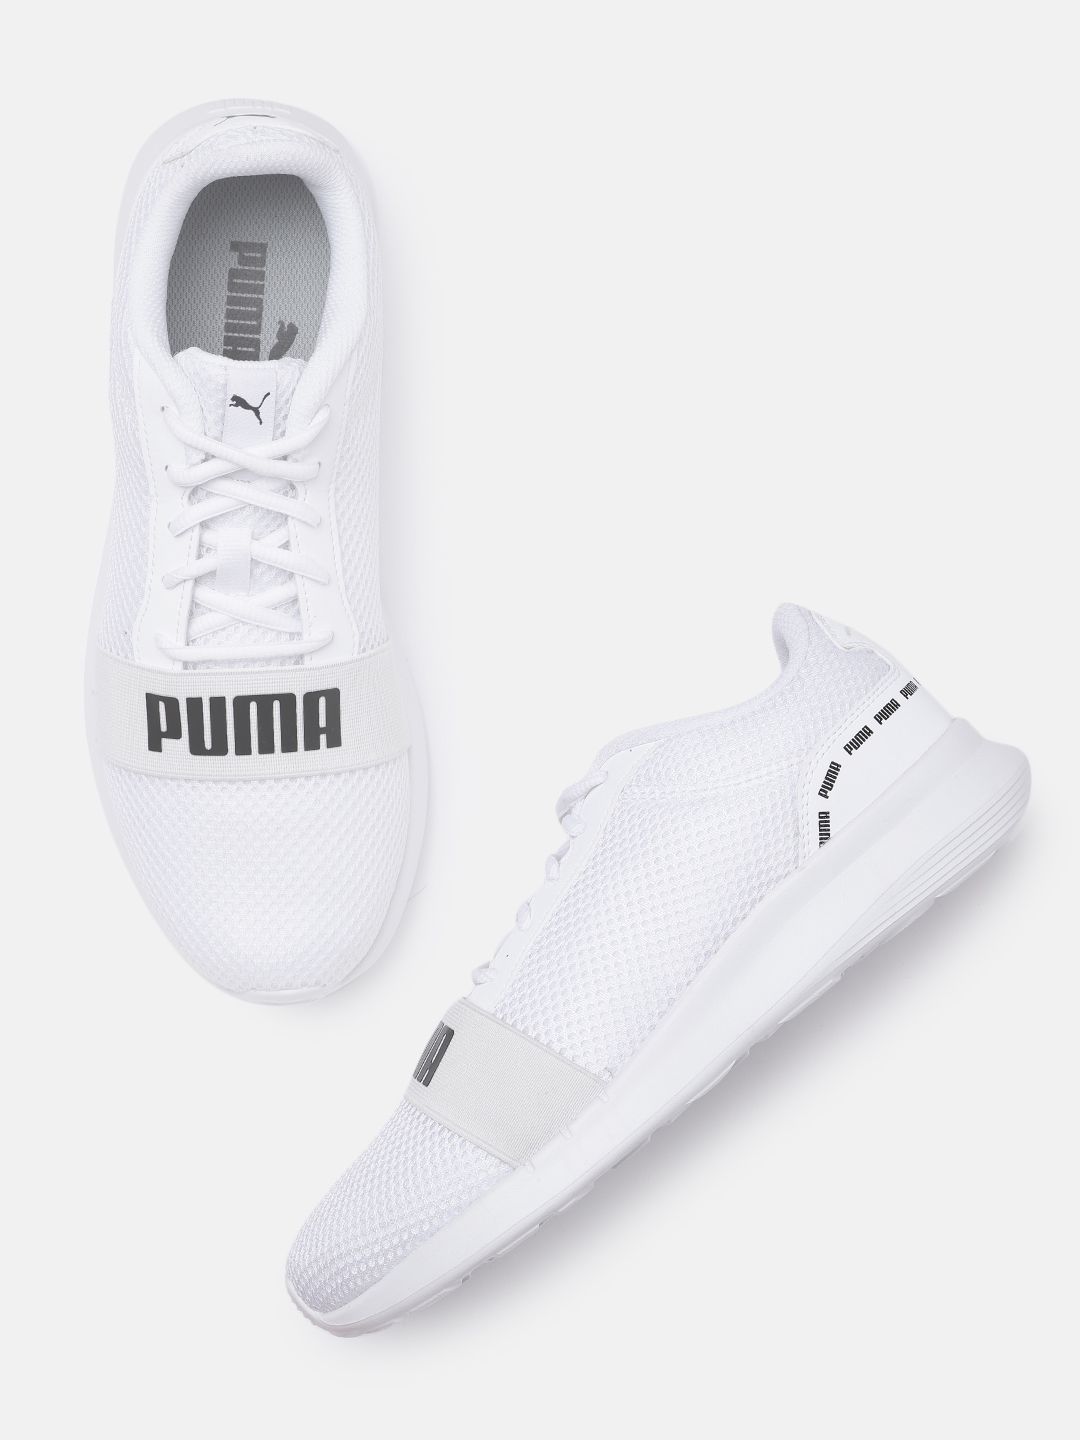 Puma Unisex Off White Solid Regular Urus Casual Sneakers Price in India